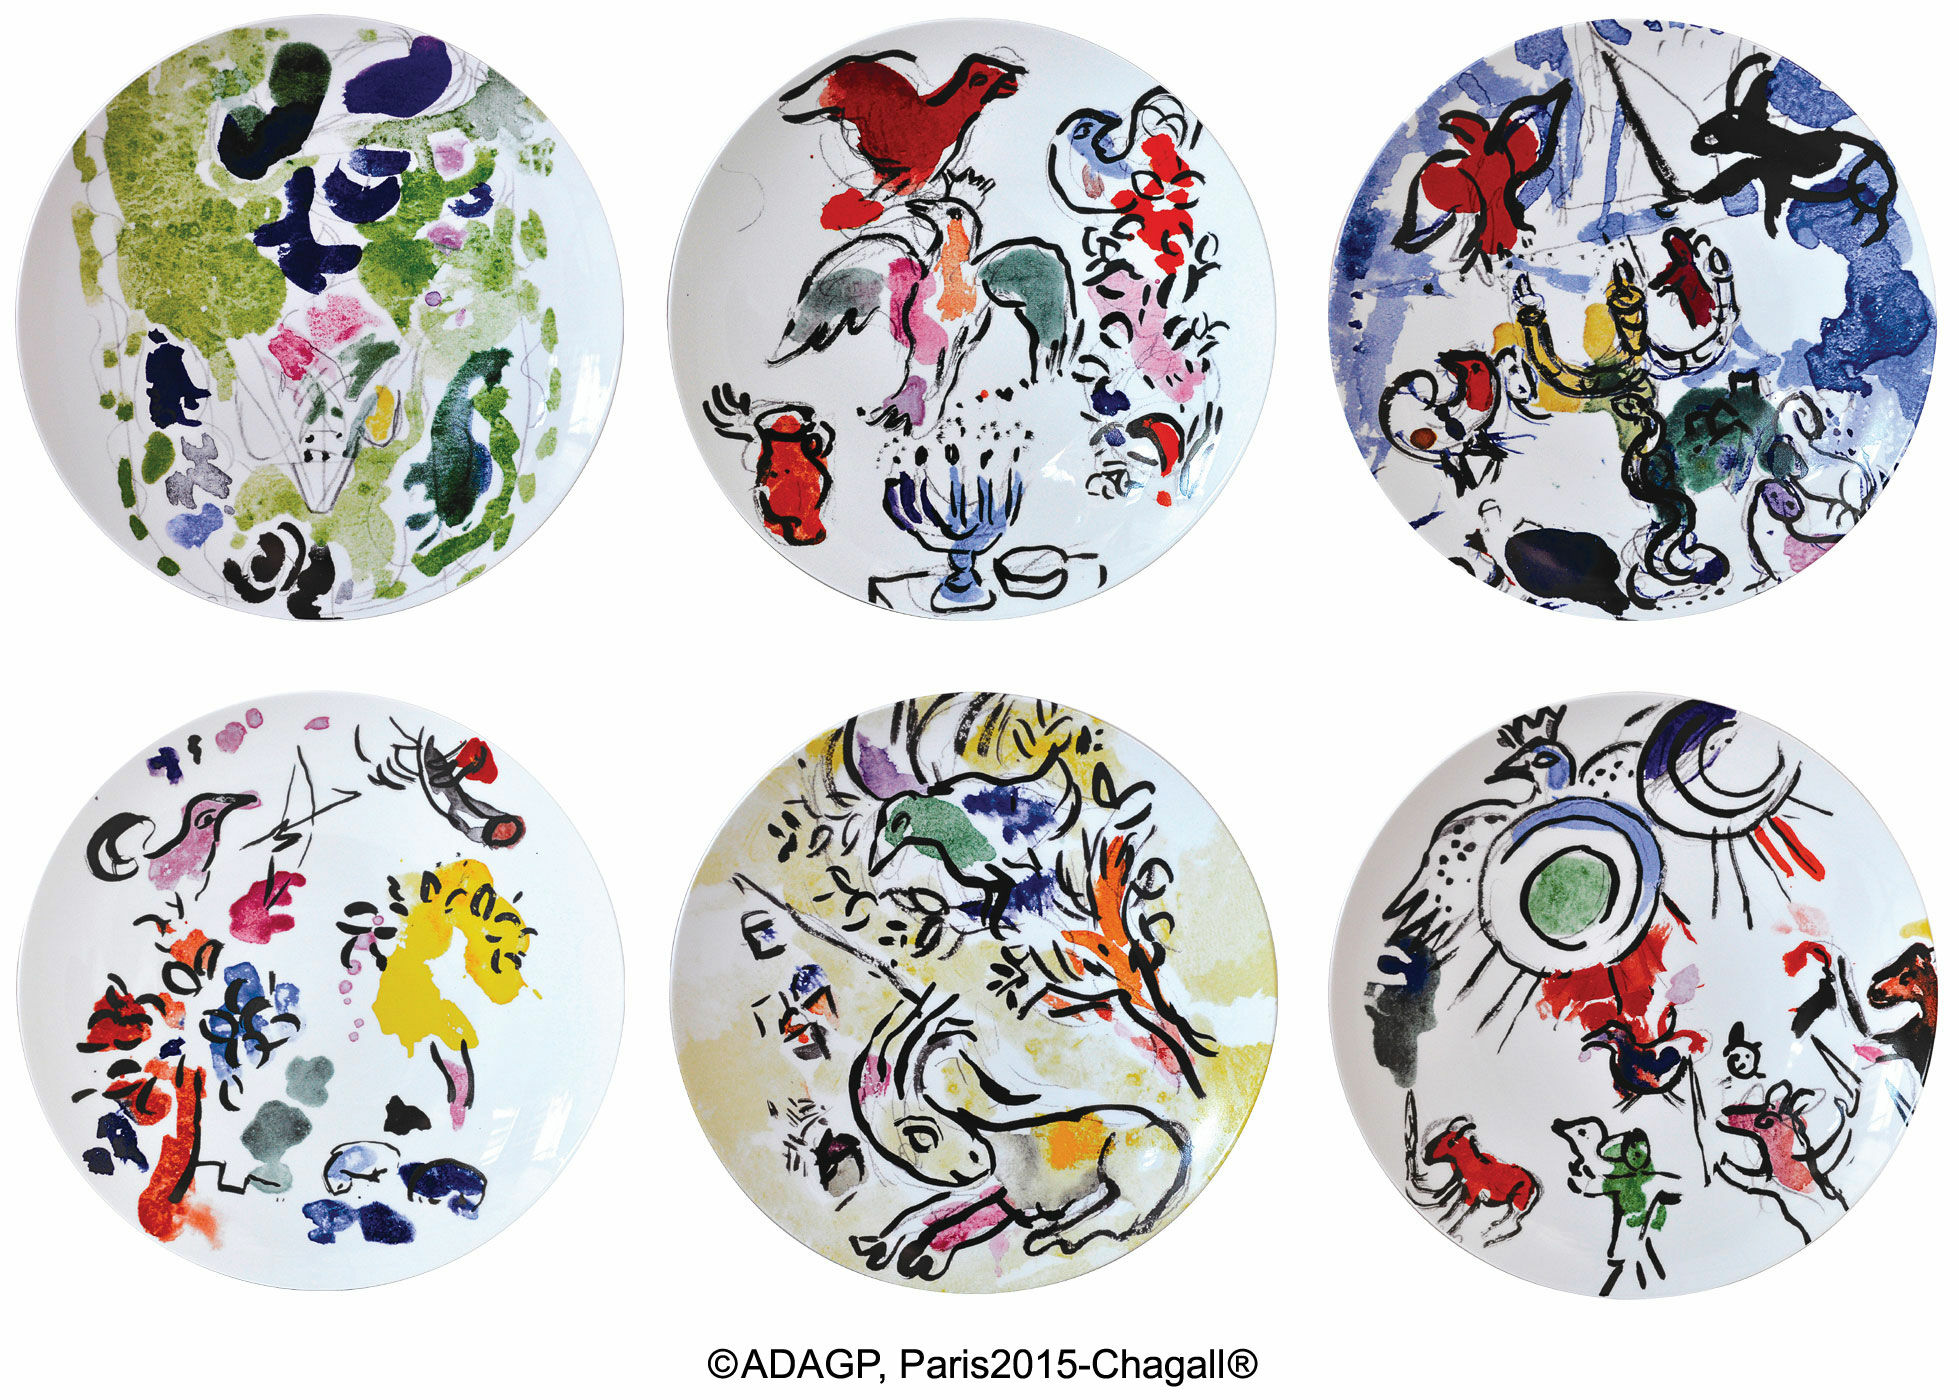 Les Vitraux d'Hadassah af Bernardaud - Sæt med 6 tallerkener med kunstnerens motiver, porcelæn von Marc Chagall